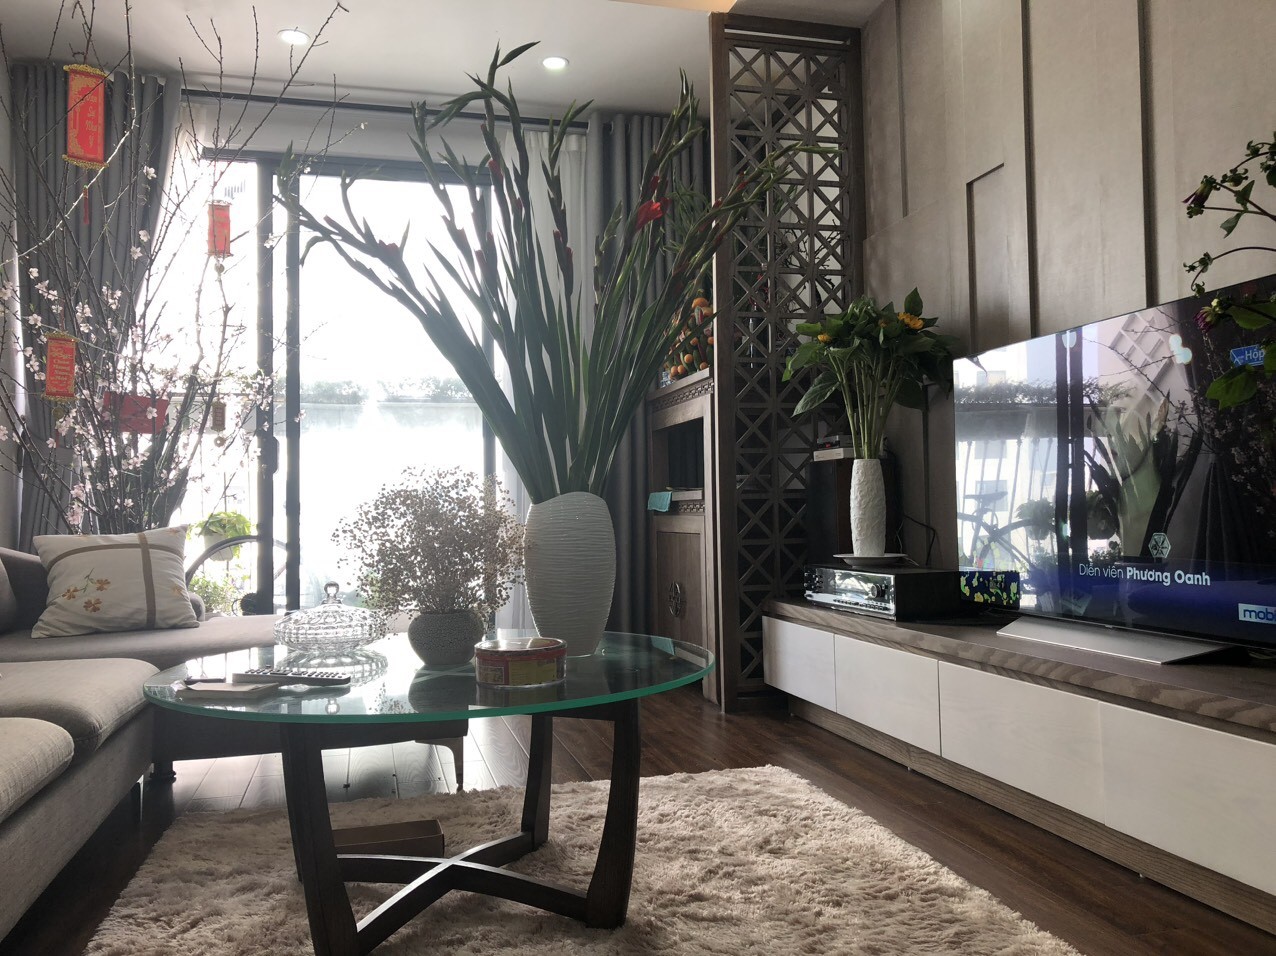 Chính chủ gửi bán 2 căn hộ đẹp mới ra GIÁ MỀM tại Chung cư An Bình City 2